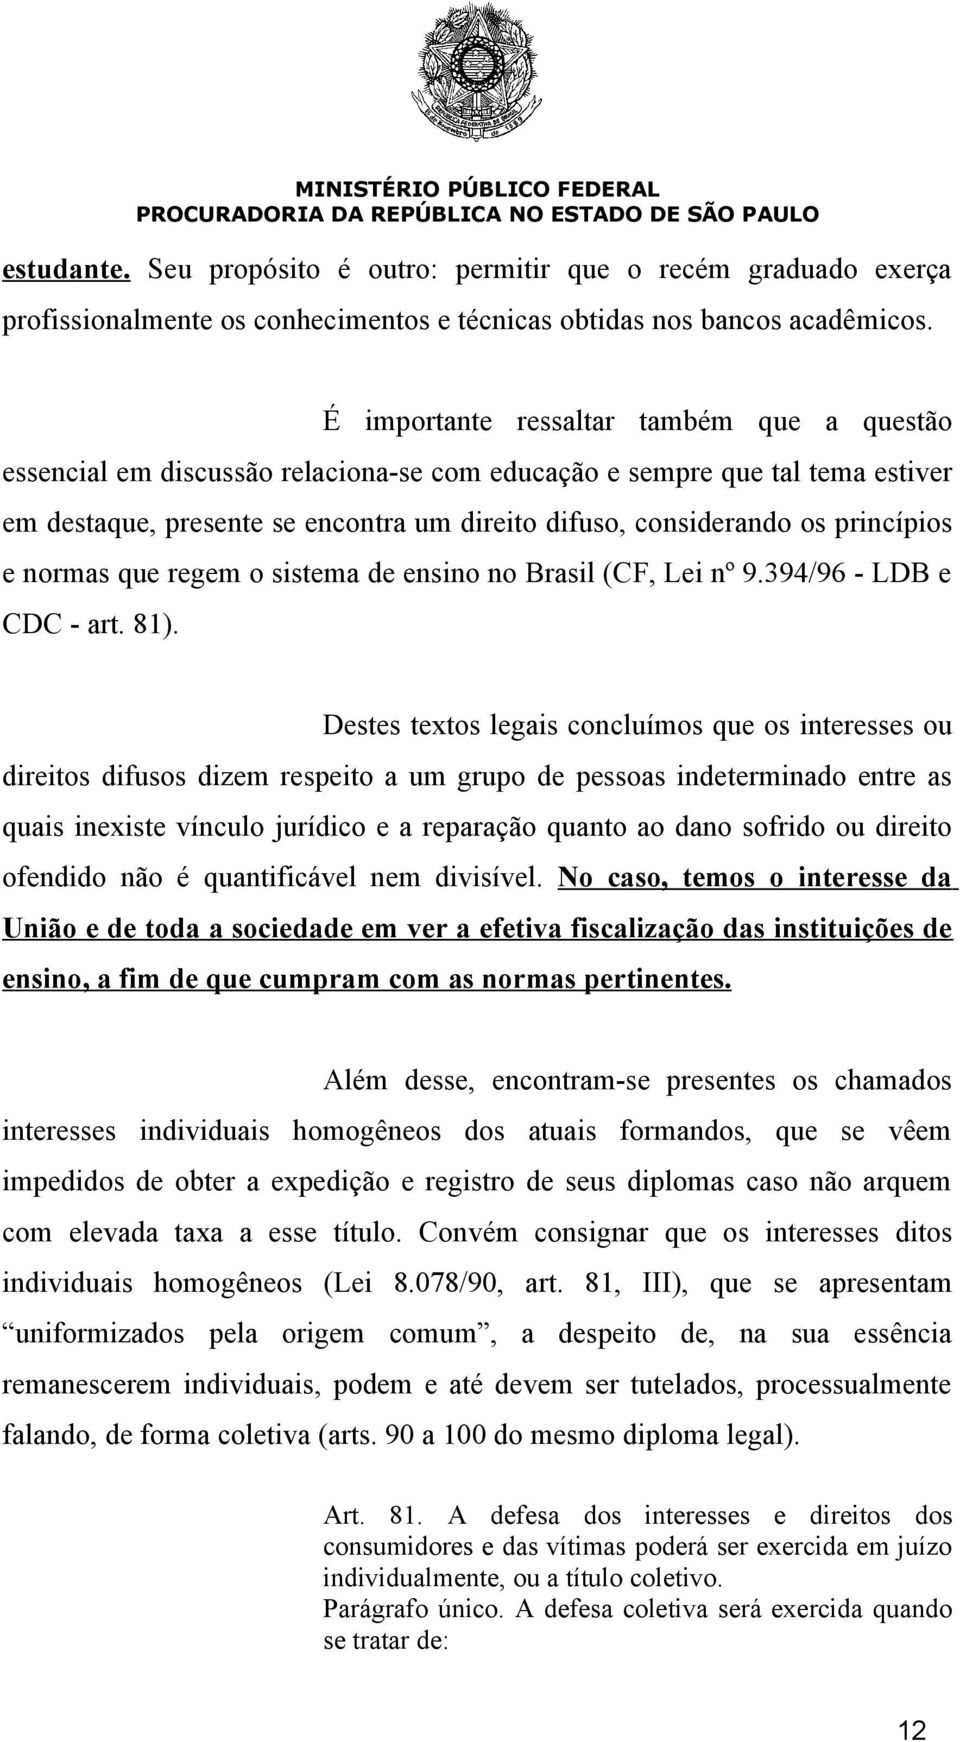 princípios e normas que regem o sistema de ensino no Brasil (CF, Lei nº 9.394/96 - LDB e CDC - art. 81).